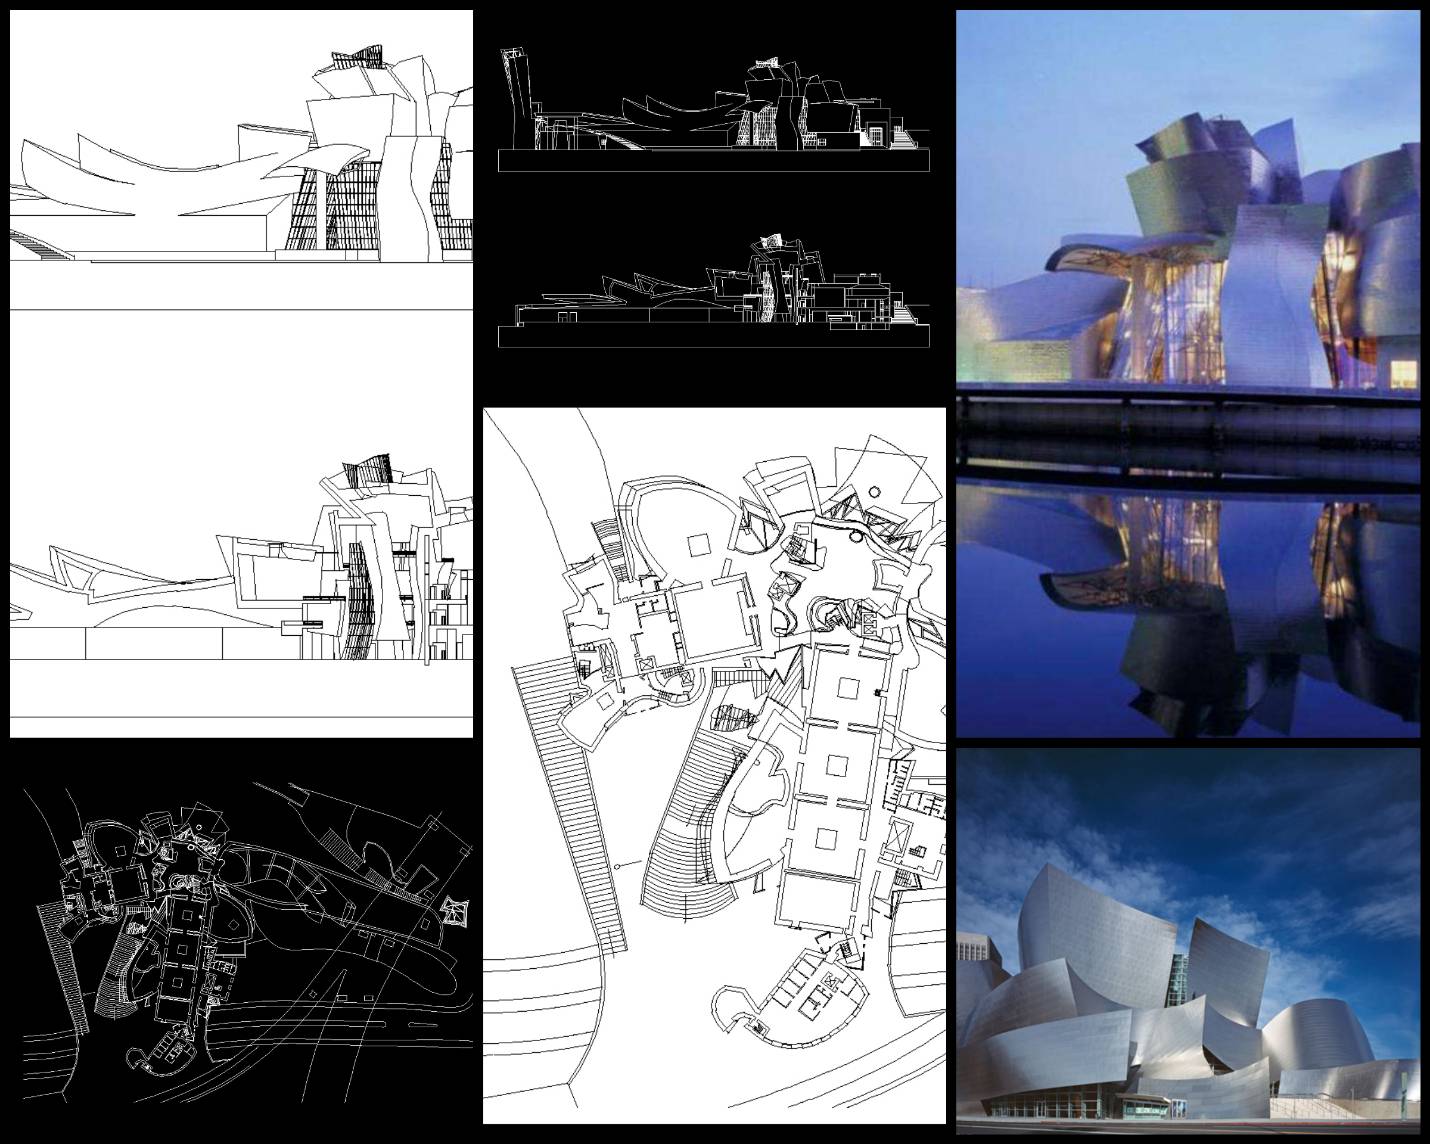 【世界知名建築案例研究CAD設計施工圖】Guggenheim Museum Bilbao 畢爾巴鄂古根海姆美術館 Frank Gehry